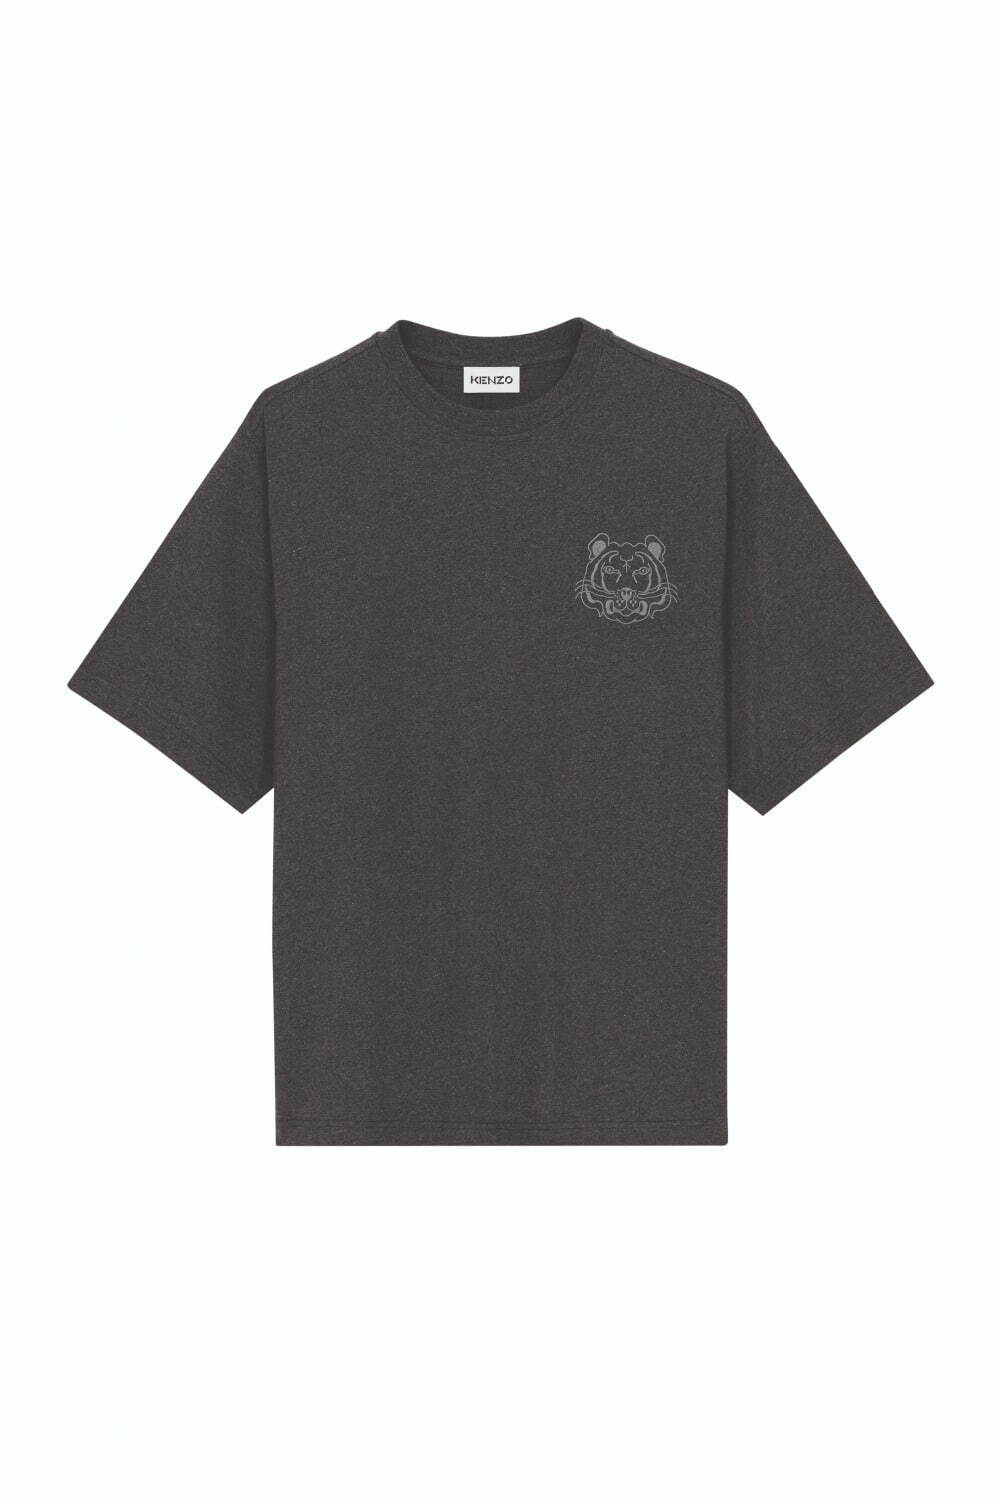 ケンゾーの新作Tシャツ - 胸に“虎”モチーフ配した全4色で